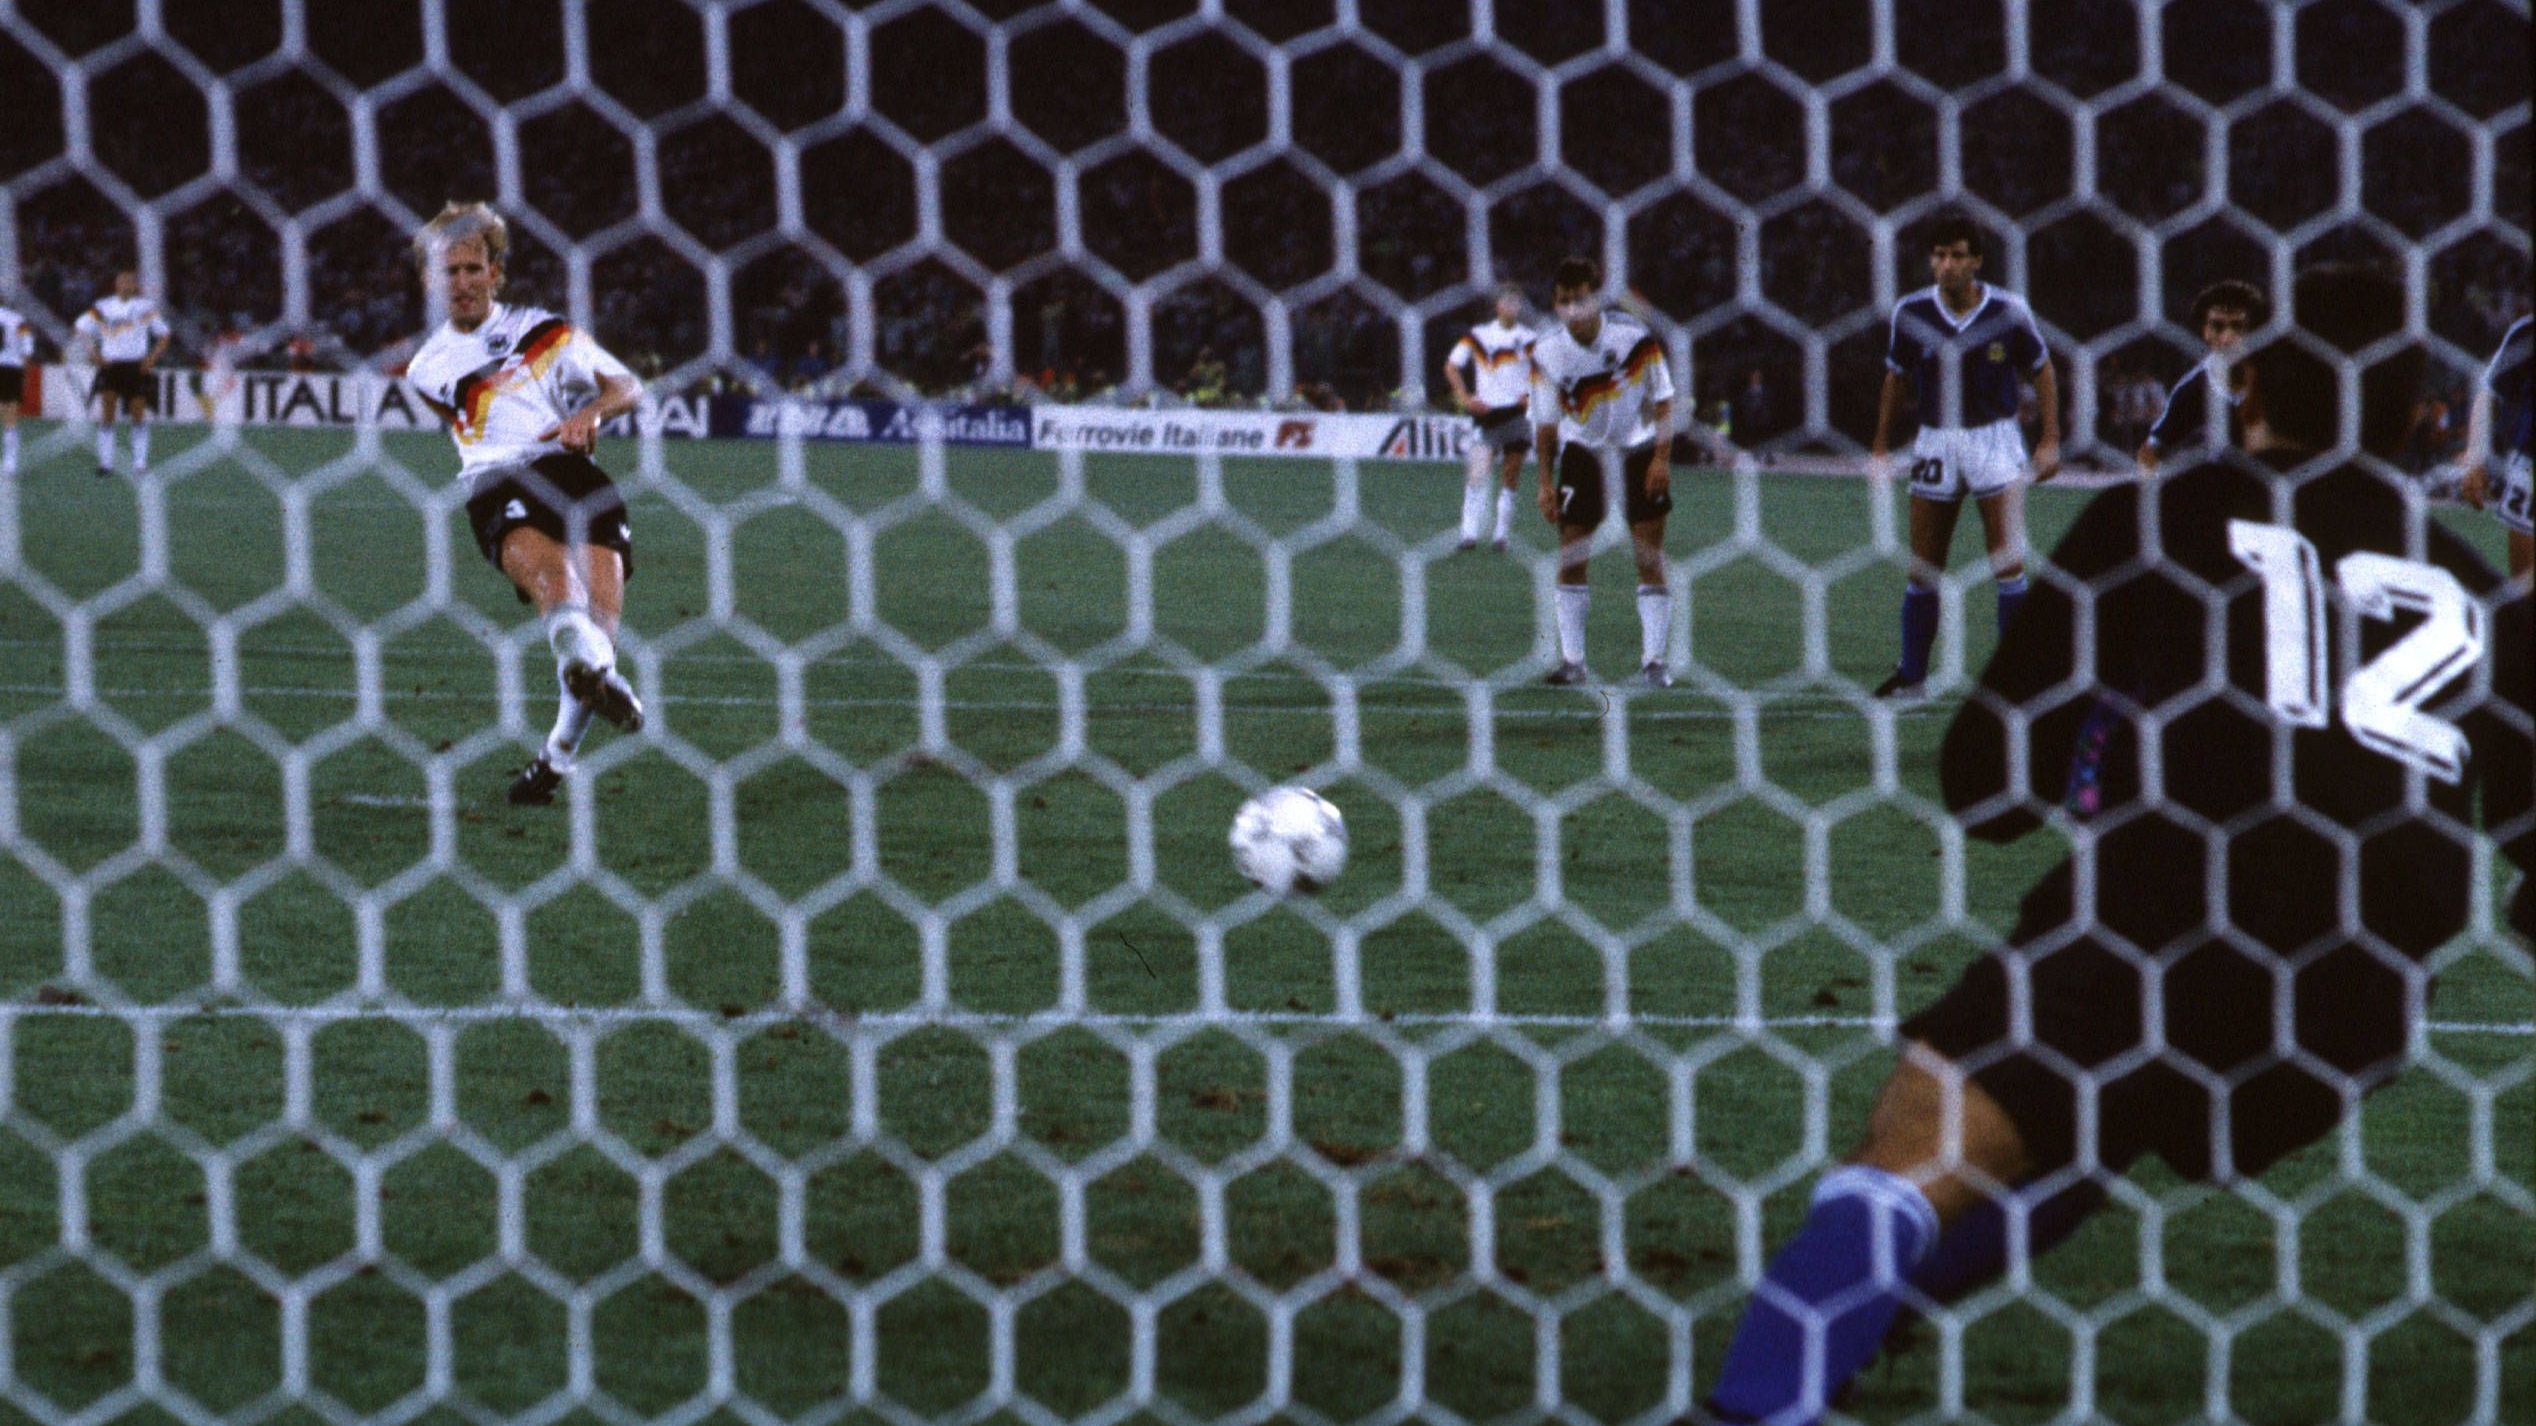 <strong>Das Tor zum WM-Titel 1990</strong><br>Brehme absolvierte von 1984 bis 1994 stolze 84 Länderspiele für die deutsche Nationalmannschaft. Das Highlight war die Weltmeisterschaft 1990. Fünf Minuten vor Ende verwandelte er im Finale gegen Italien den entscheidenden Elfmeter zum 1:0-Sieg. Bei der EM 1992 führte er die Mannschaft als Kapitän aufs Feld, nachdem sich Rudi Völler verletzt hatte.&nbsp;&nbsp;